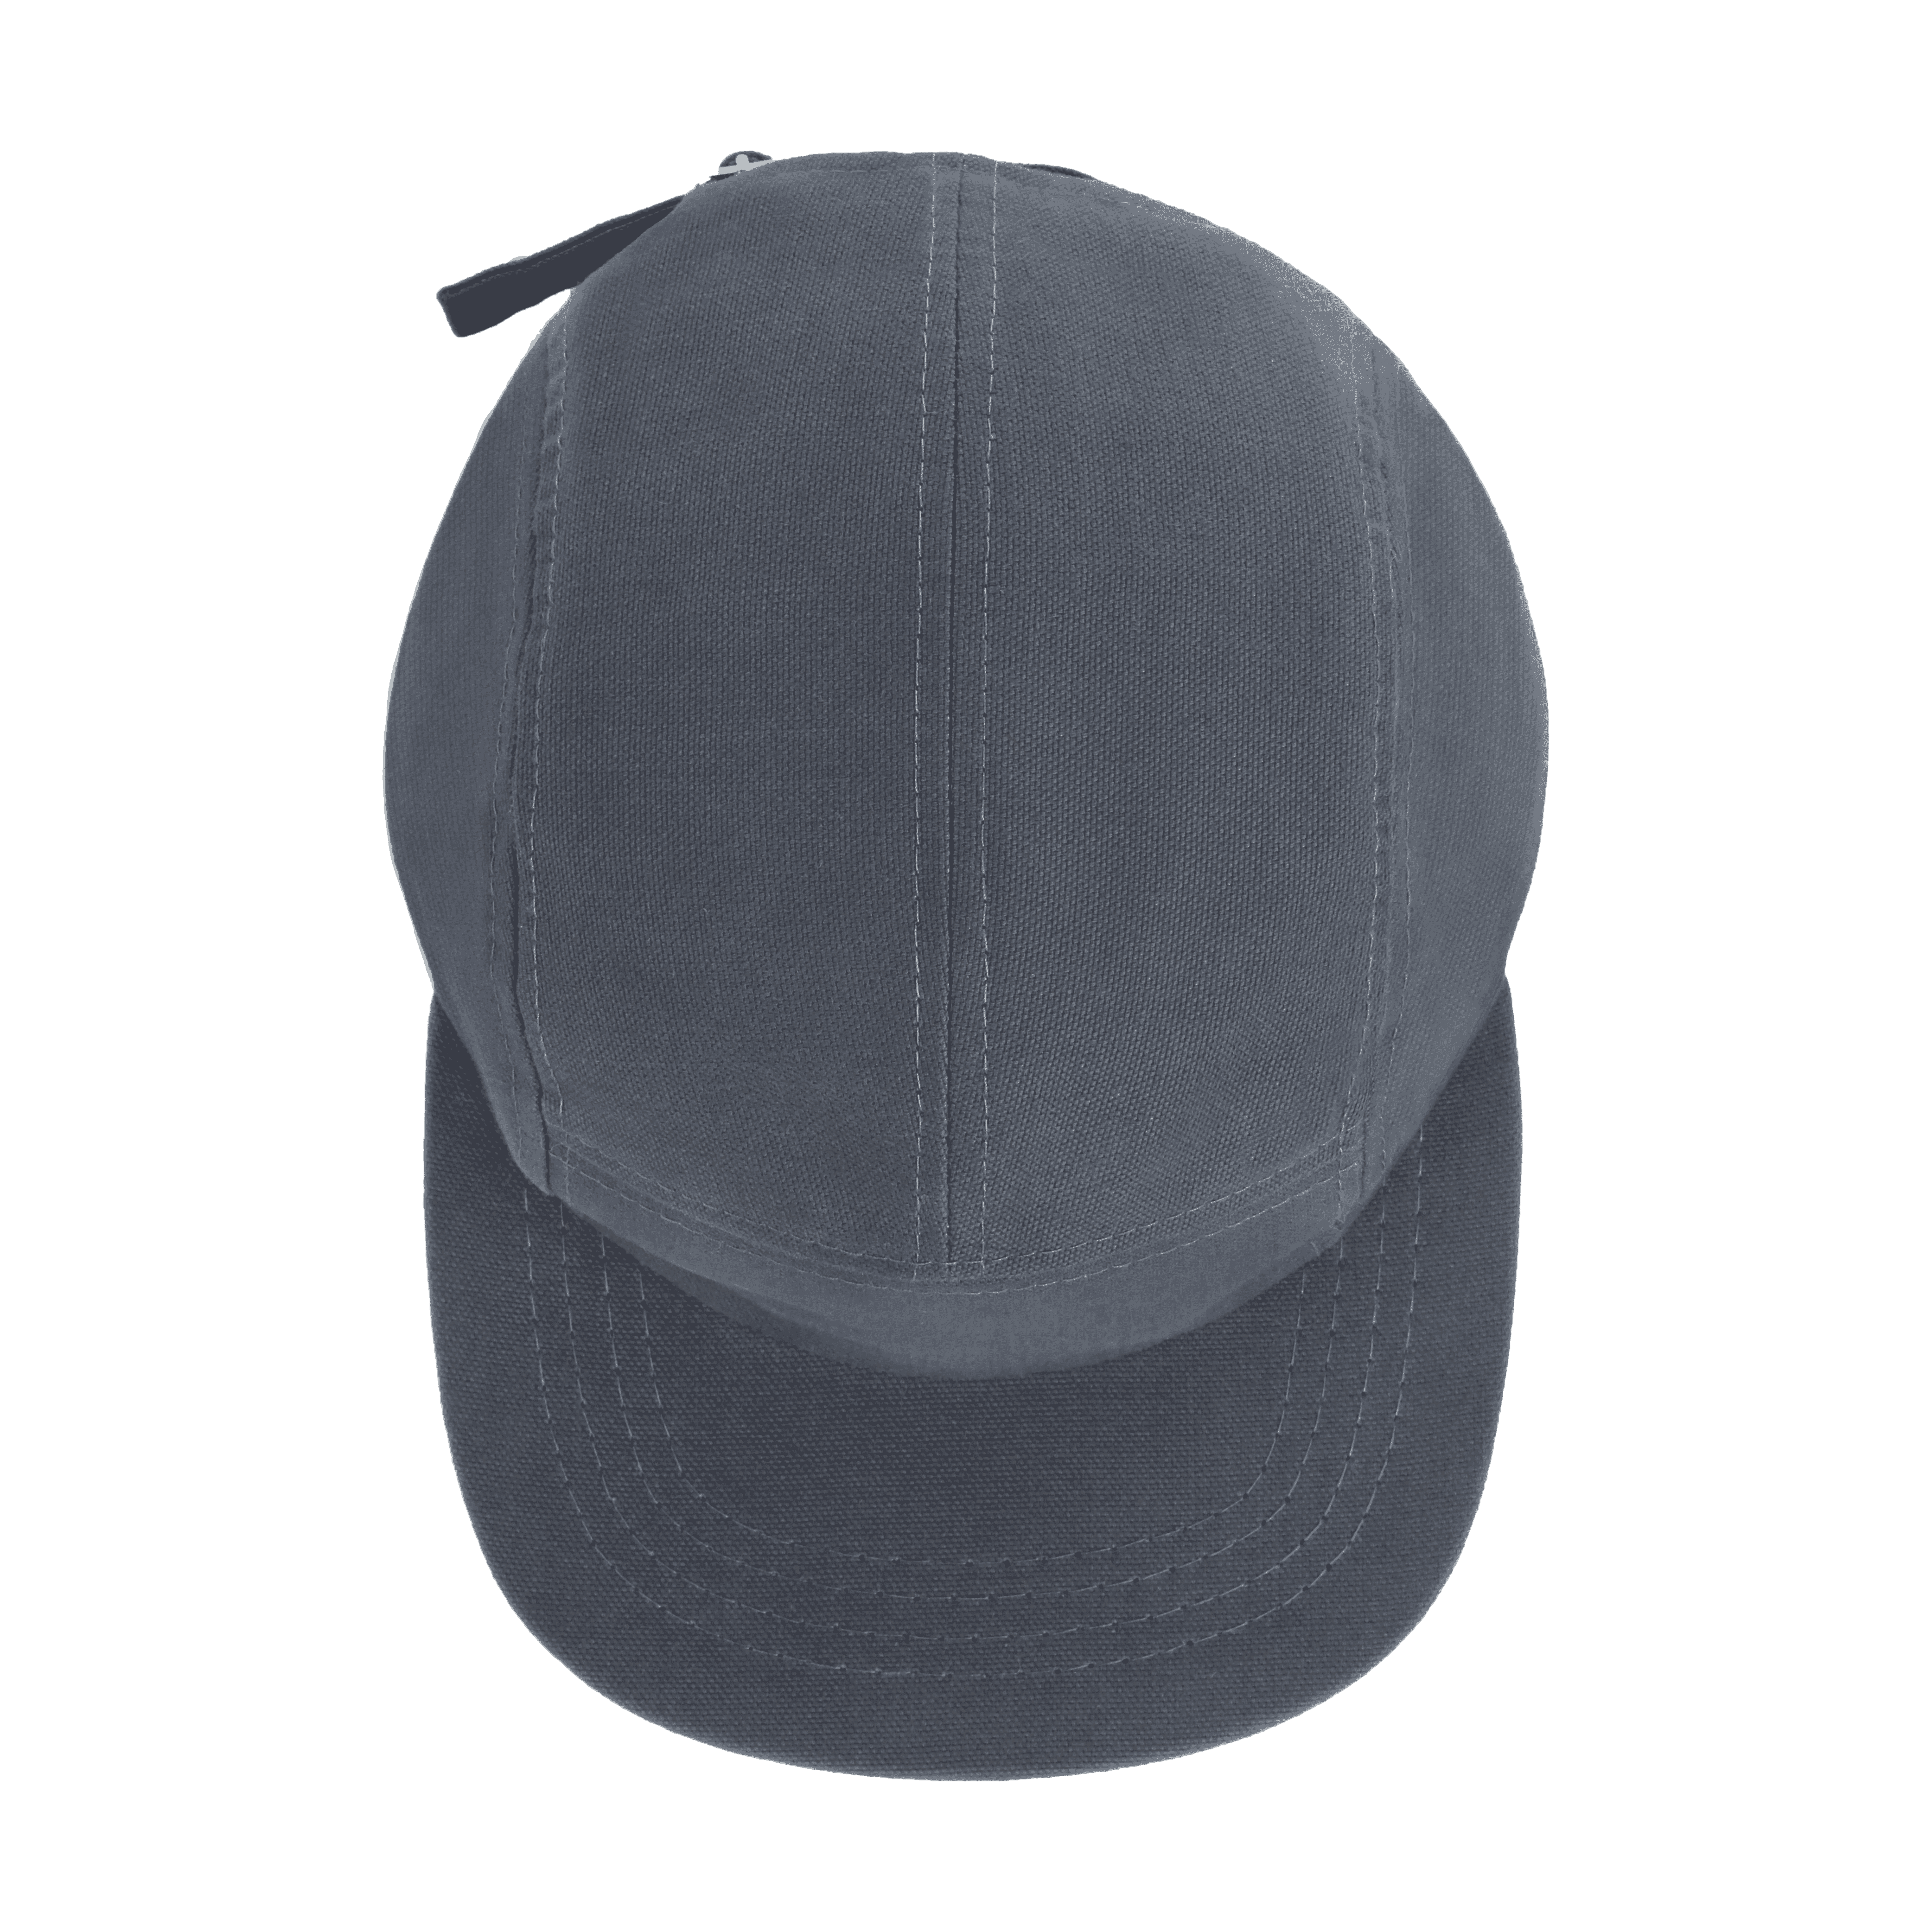 Custom hat designer | Hothead Cap Co.